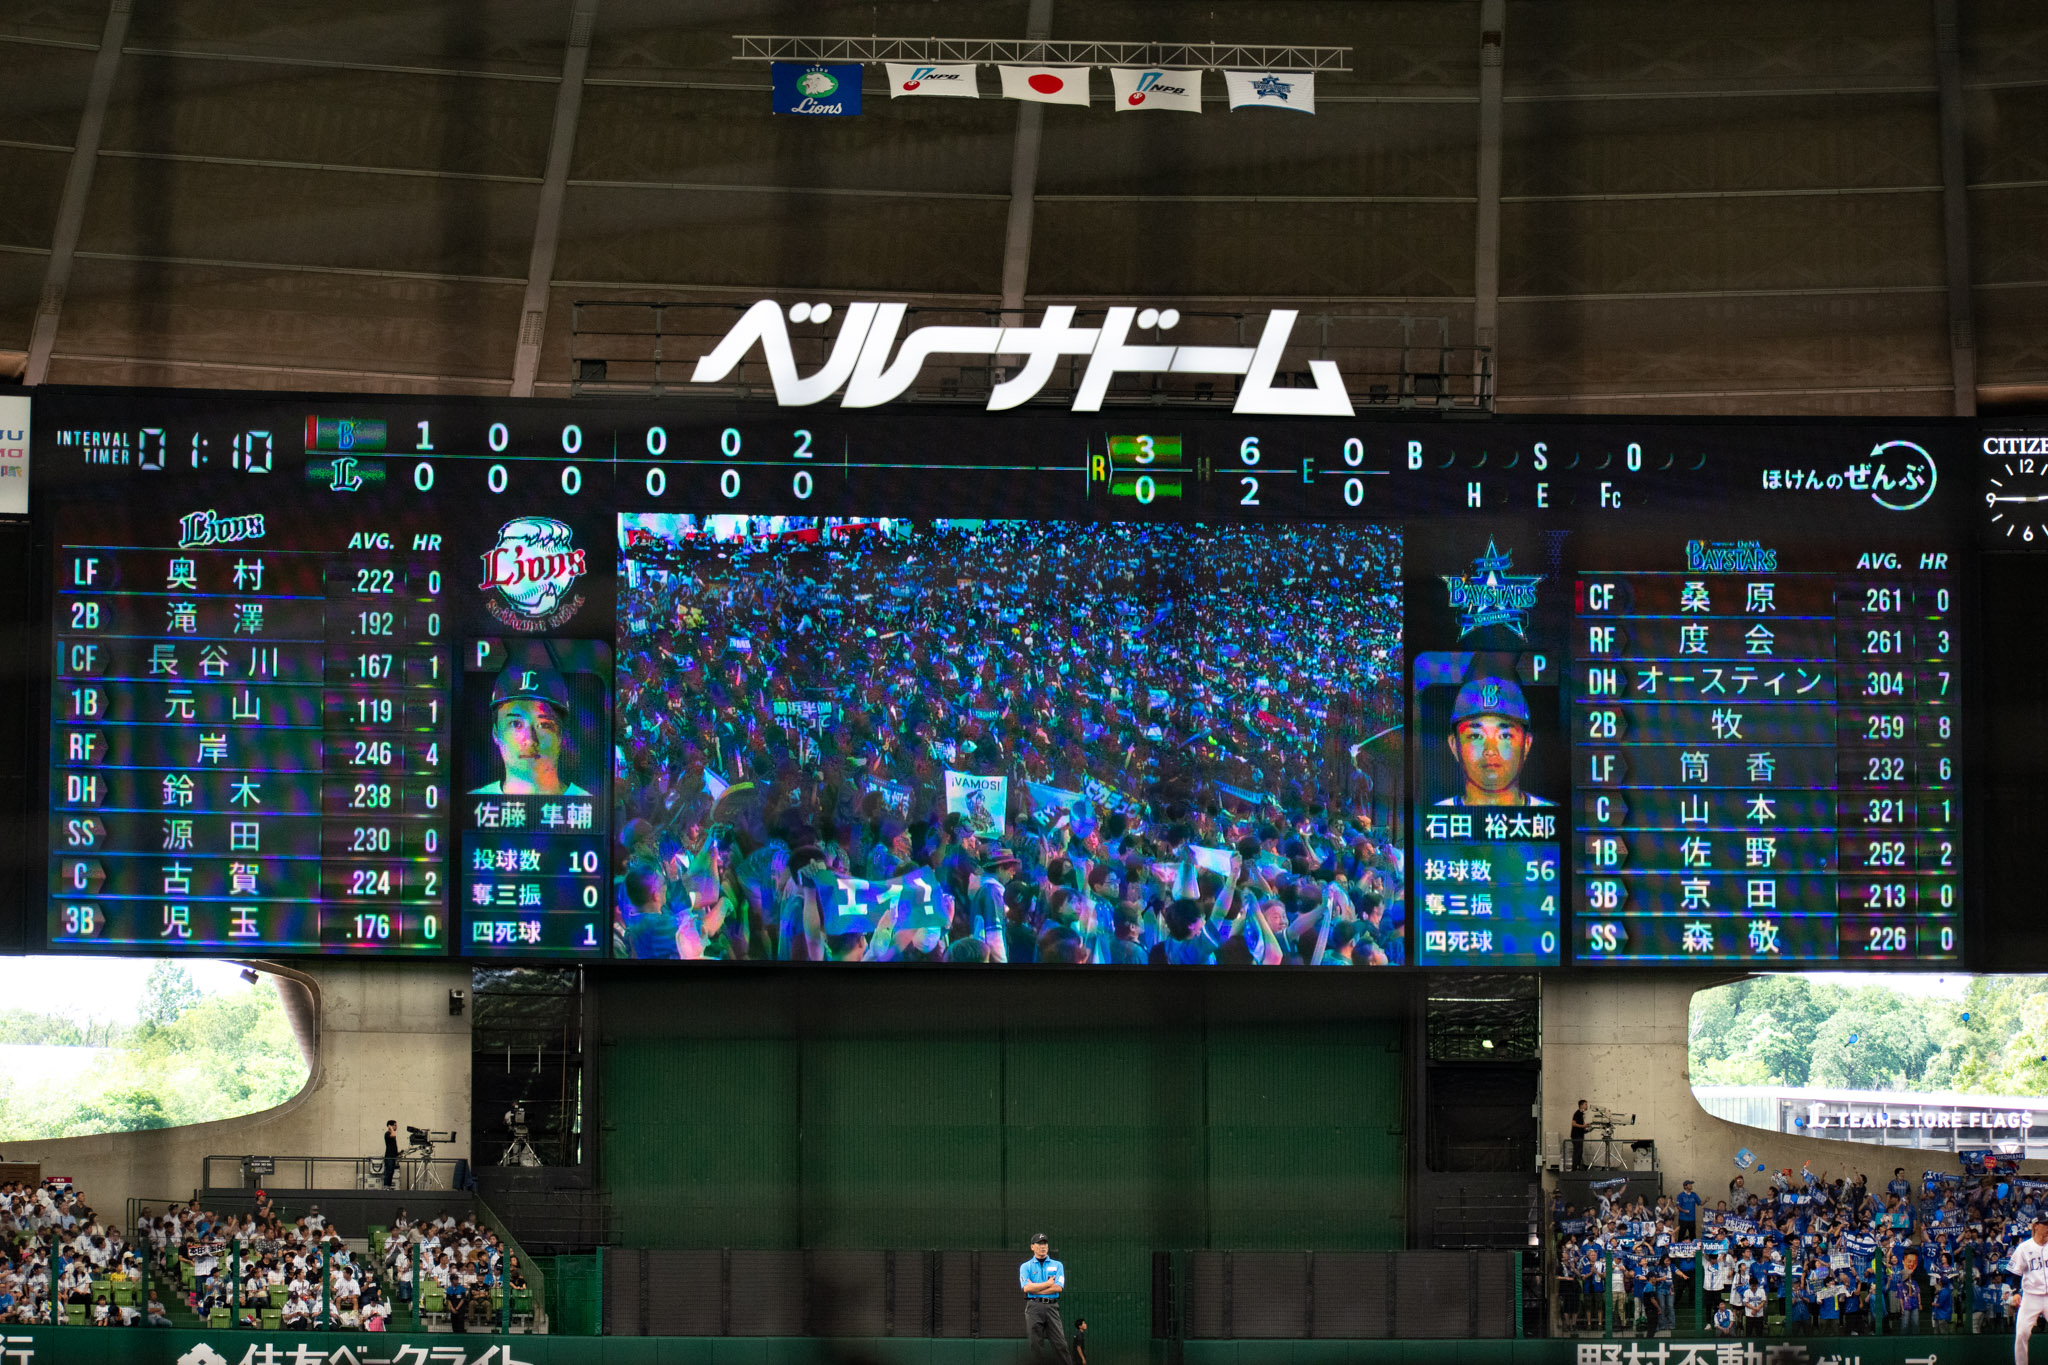 横浜DeNAベイスターズ石田 裕太郎 選手は6回までで56球